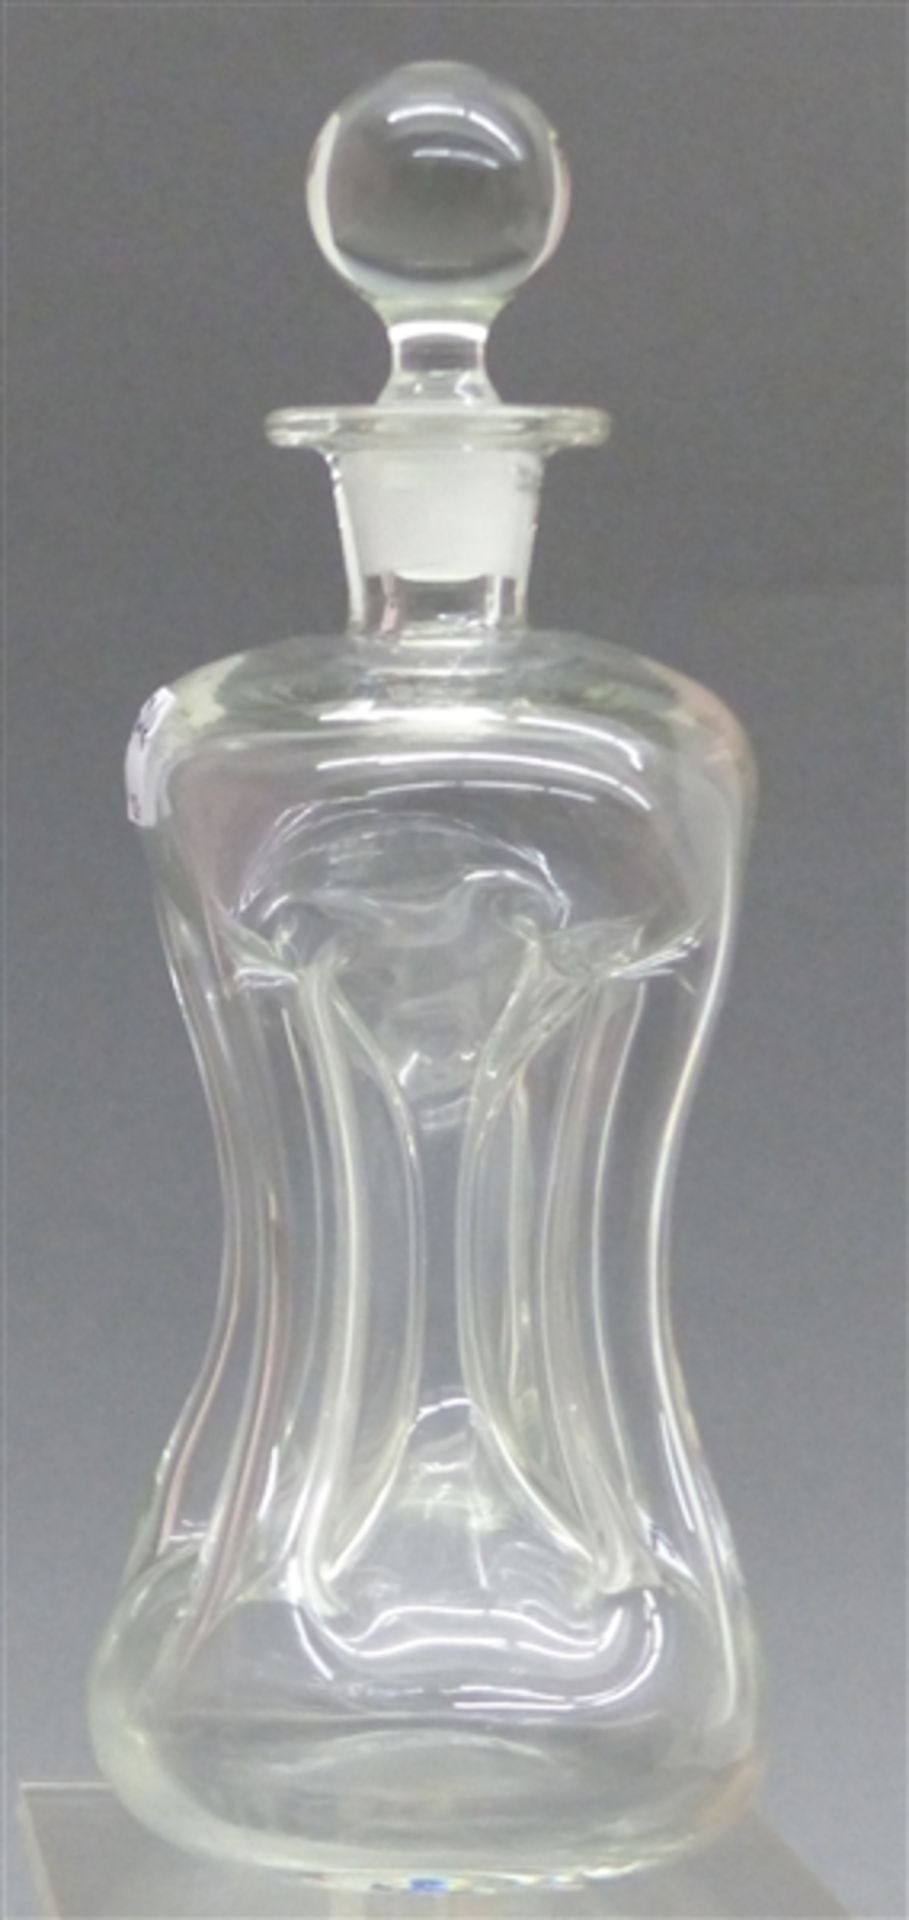 Kneifflasche Glas, farblos, mit Stöpsel, h 23 cm,